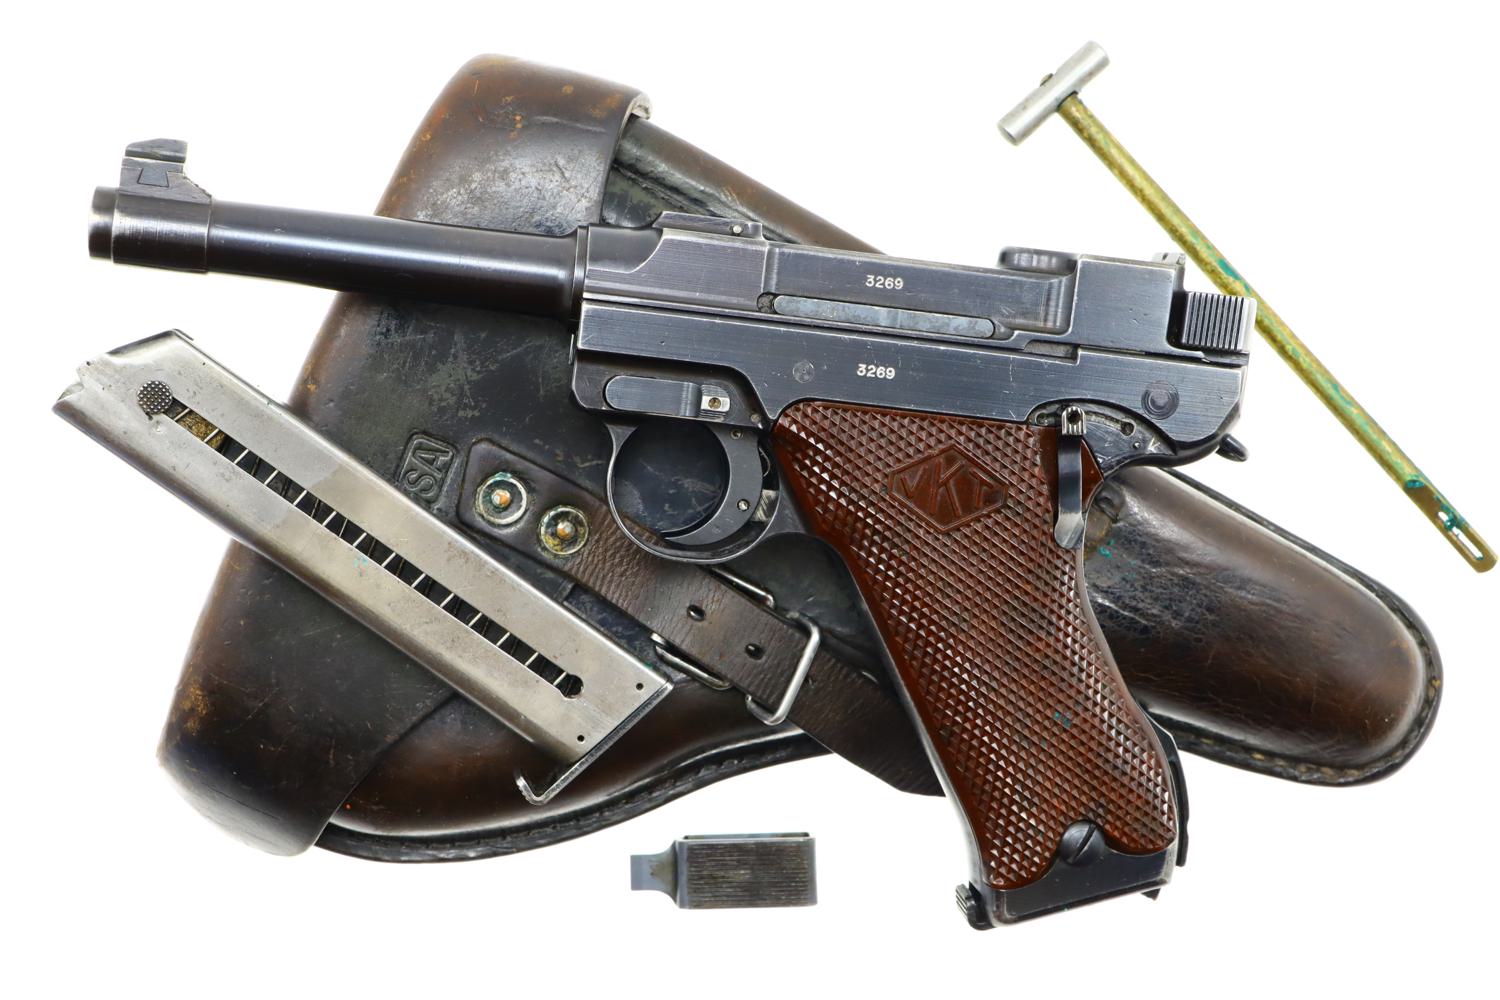 Finnish military VKT pistol, L-35, 3269, A-1800-img-0